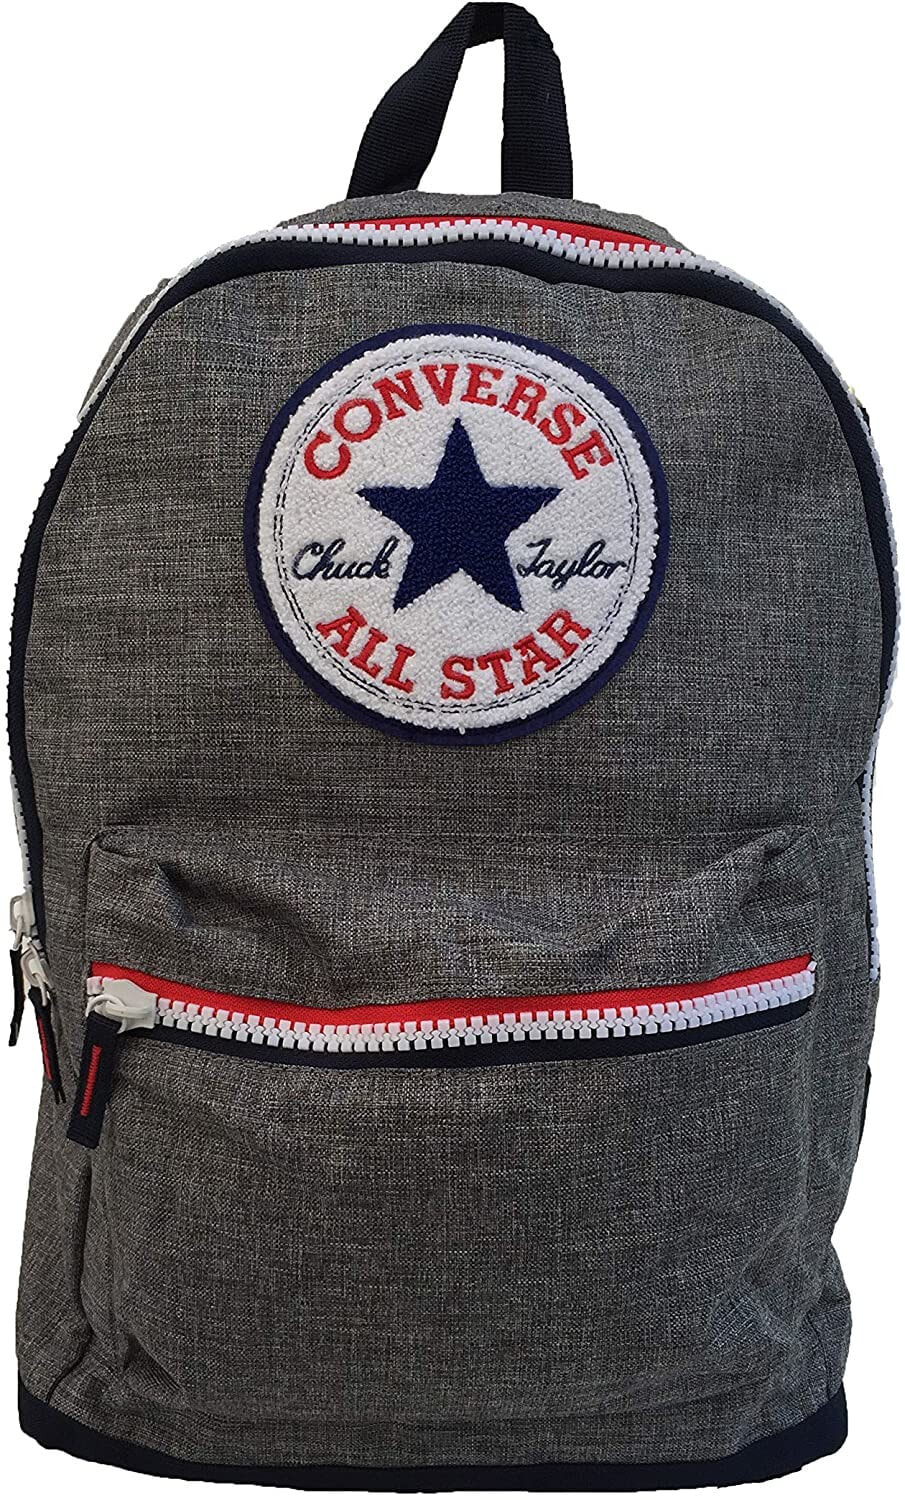 Мужской спортивный рюкзак серый Converse Backpack (One Size, Dark Grey Heather(9A5396-042)/Red)